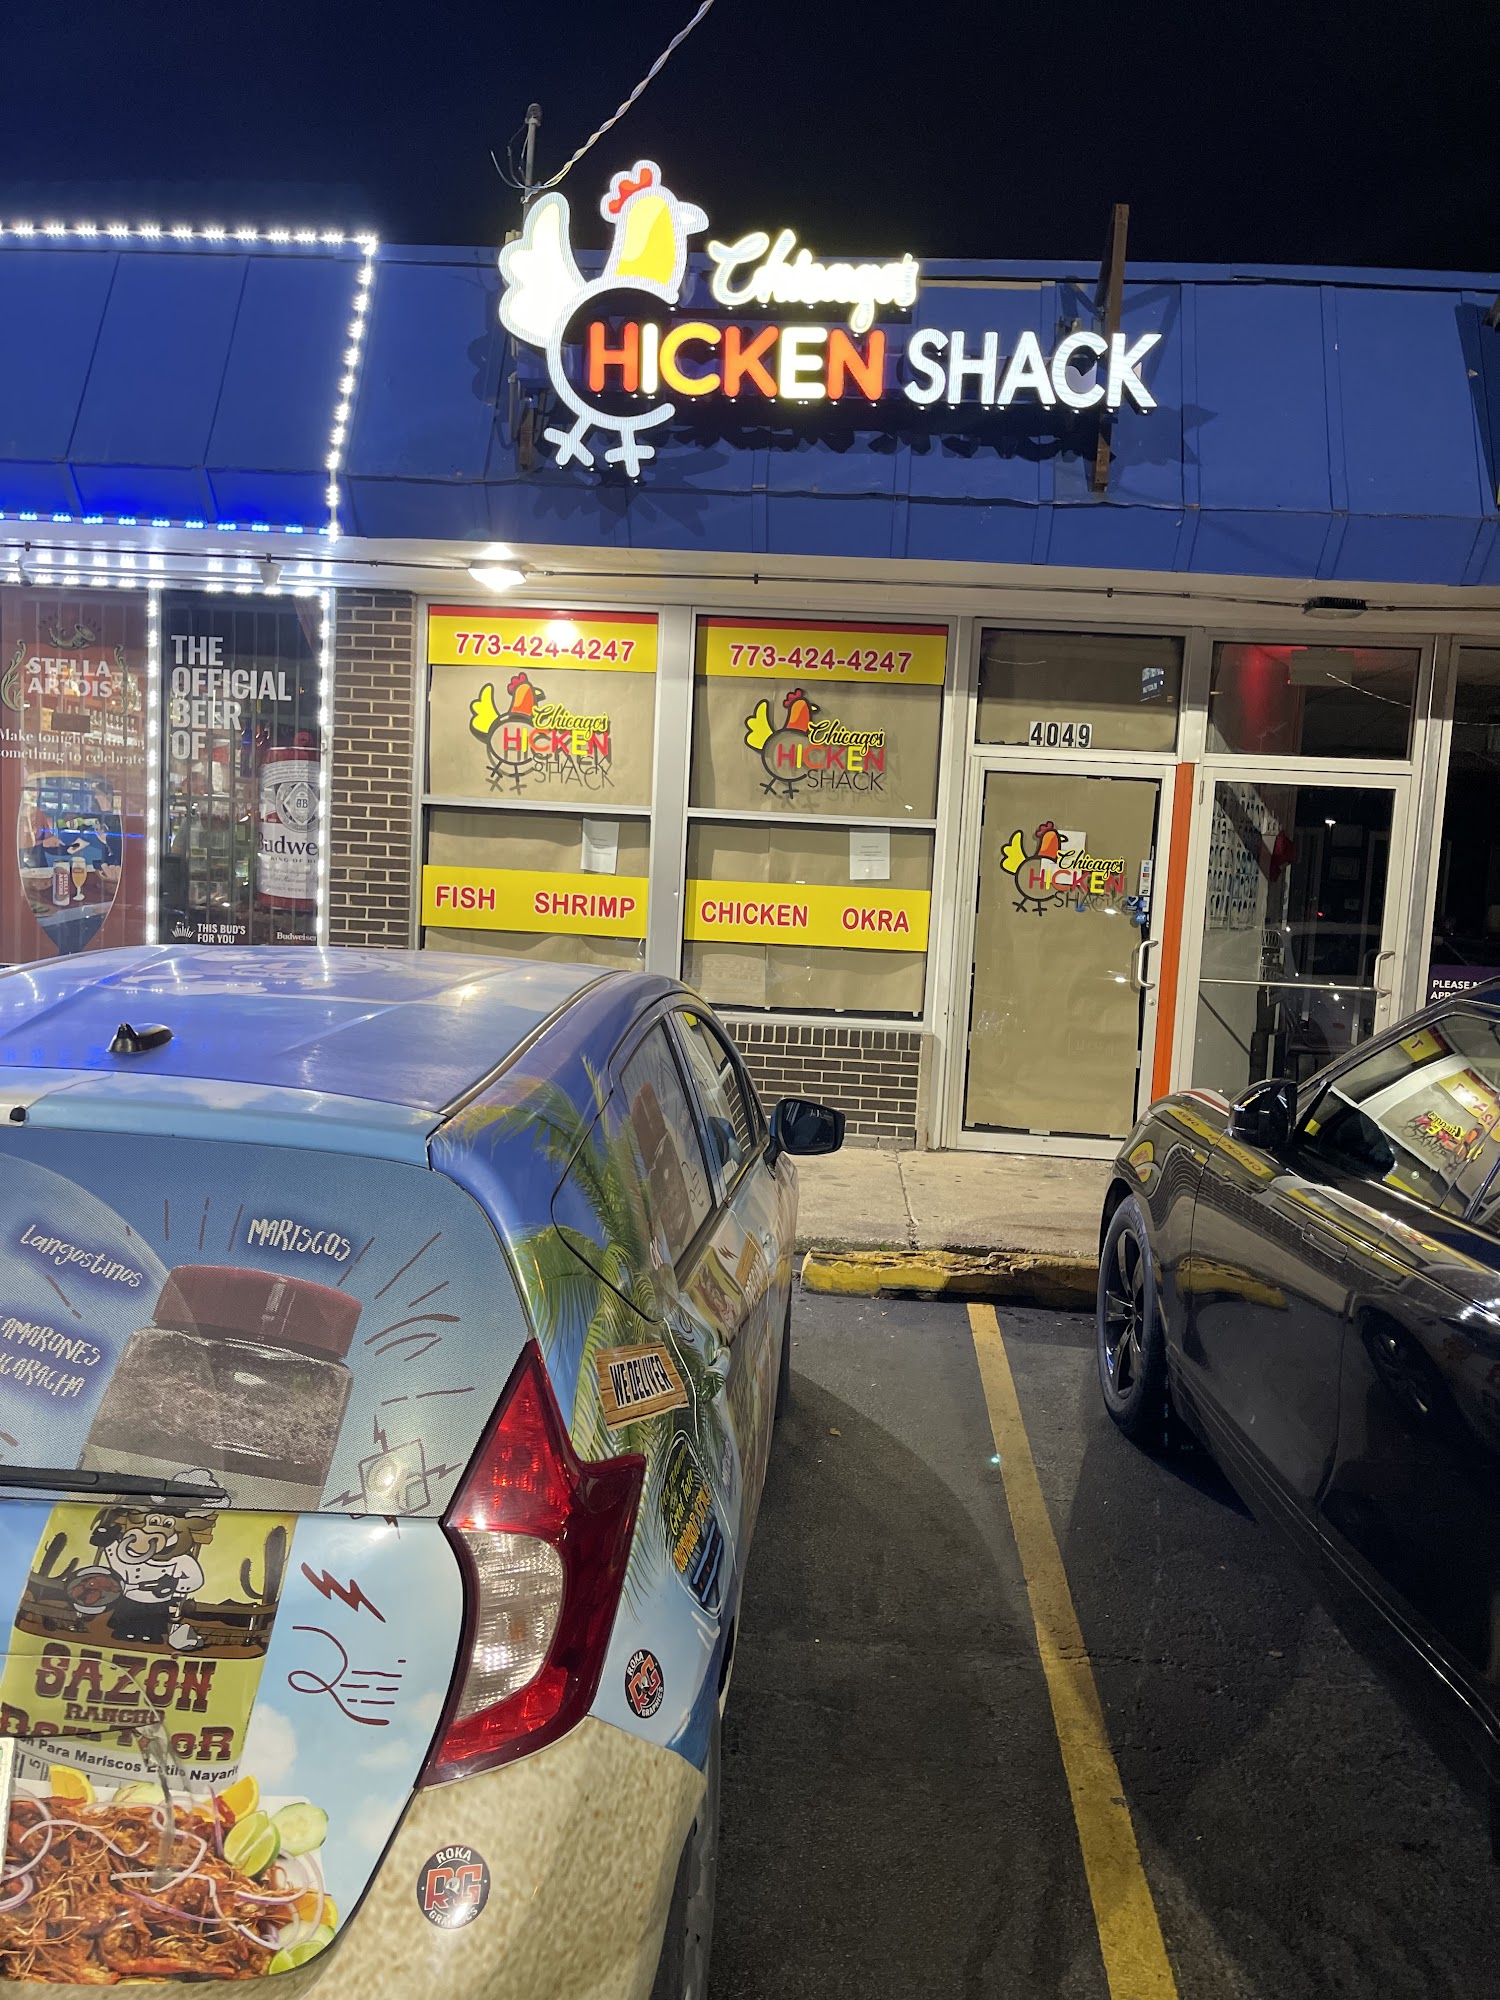 Chicago’s Chicken Shack